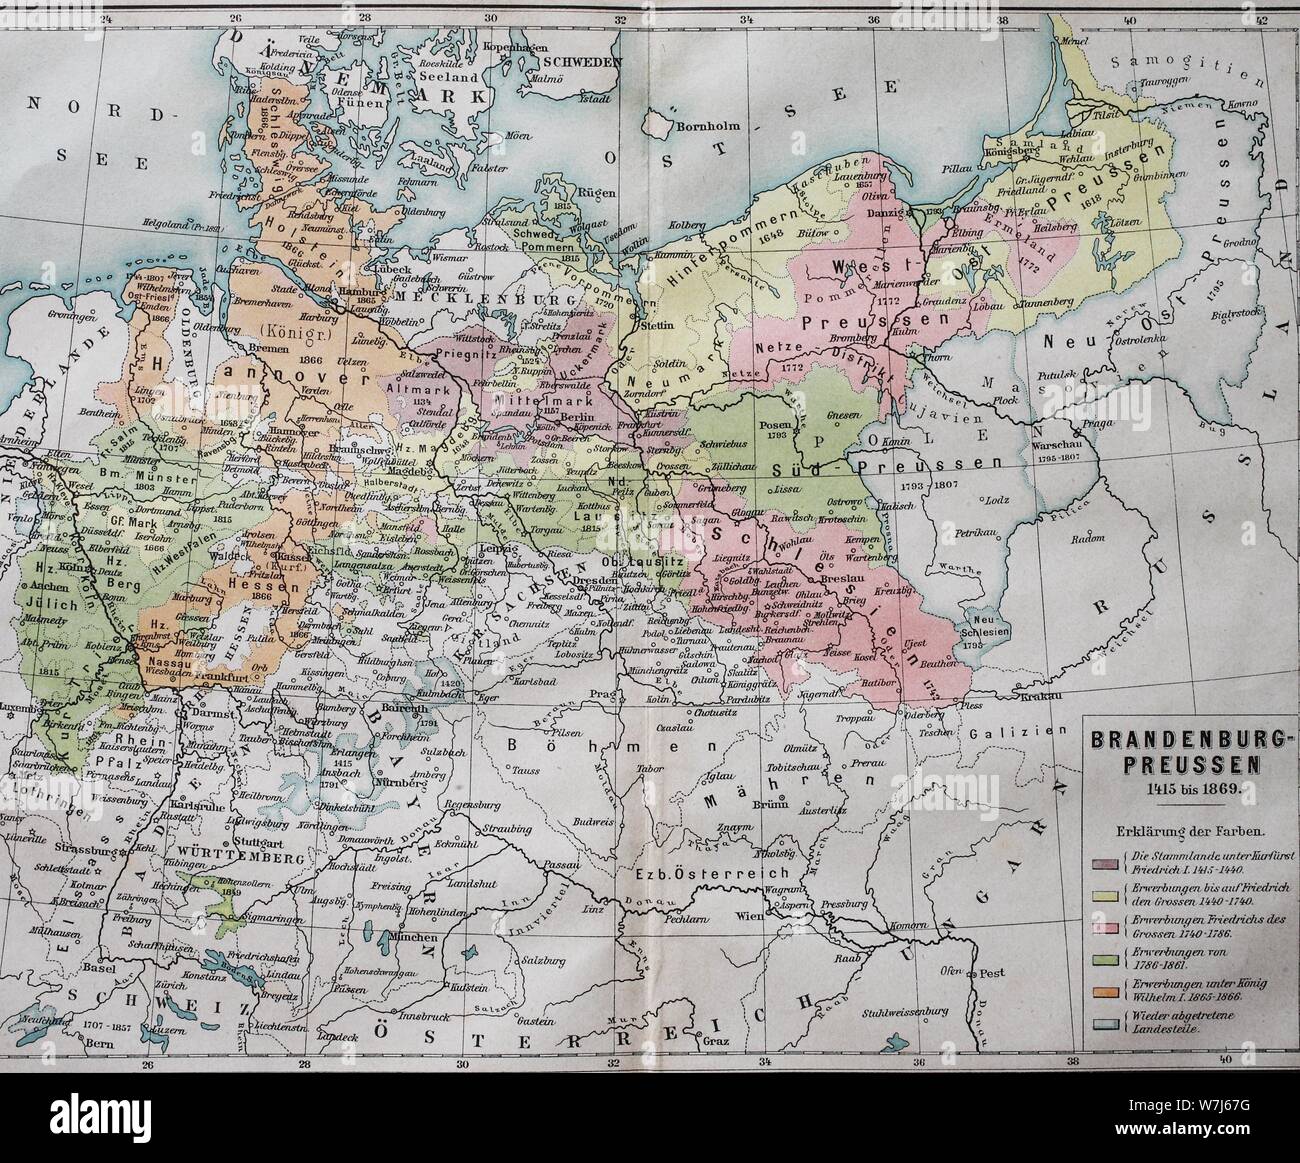 Mapa, Brandenburg-Prussia desde 1415-1869, ilustración histórica, Alemania Foto de stock